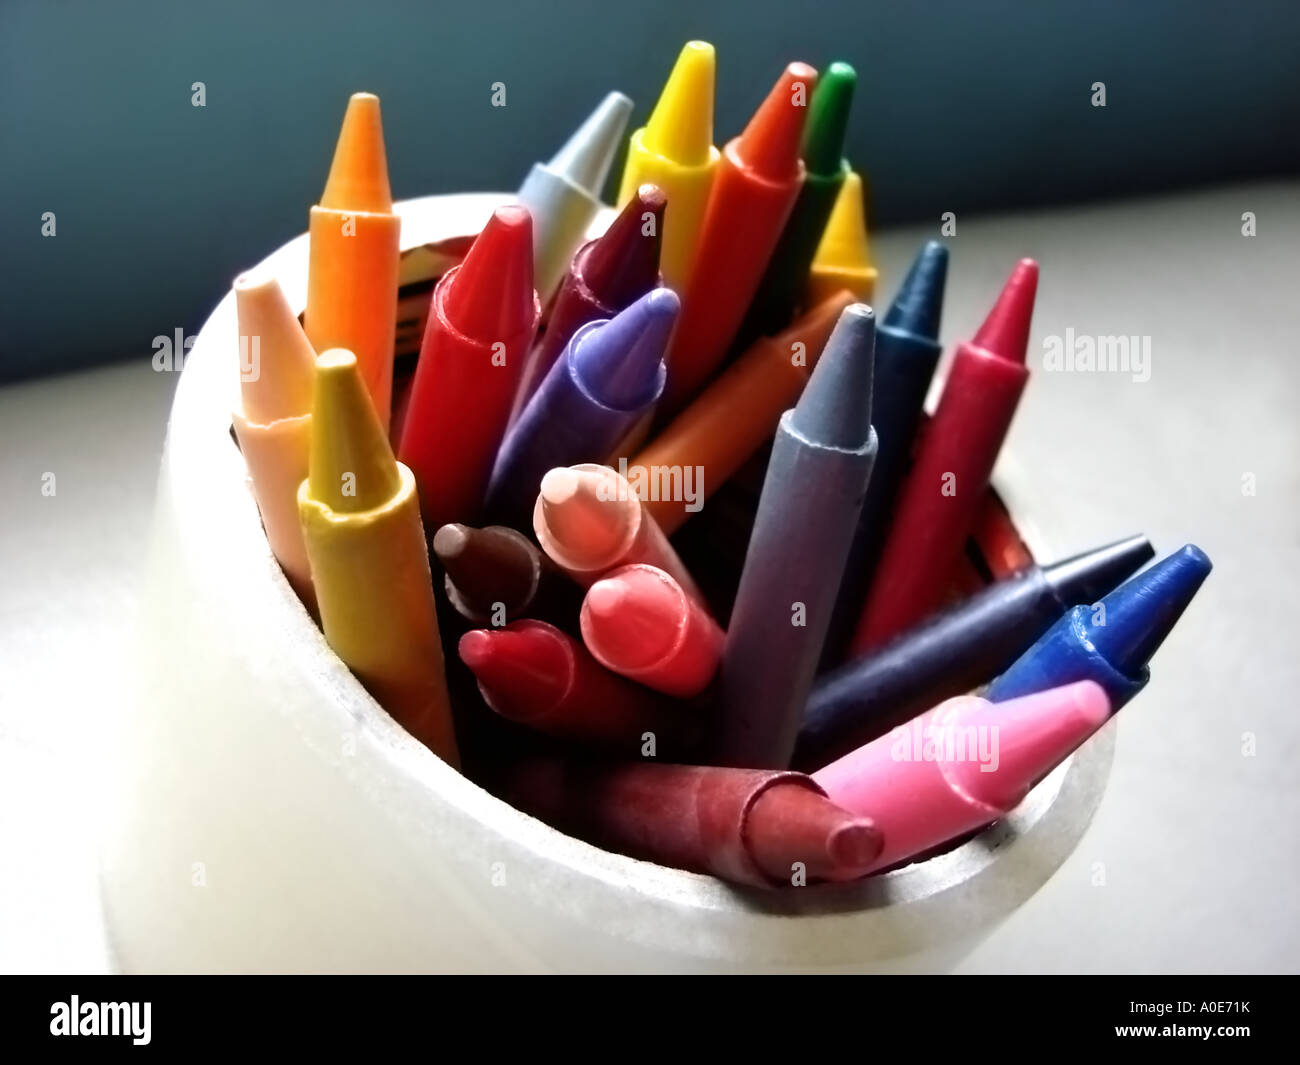 crayons de différentes couleurs à l'intérieur d'une tasse blanche Banque D'Images